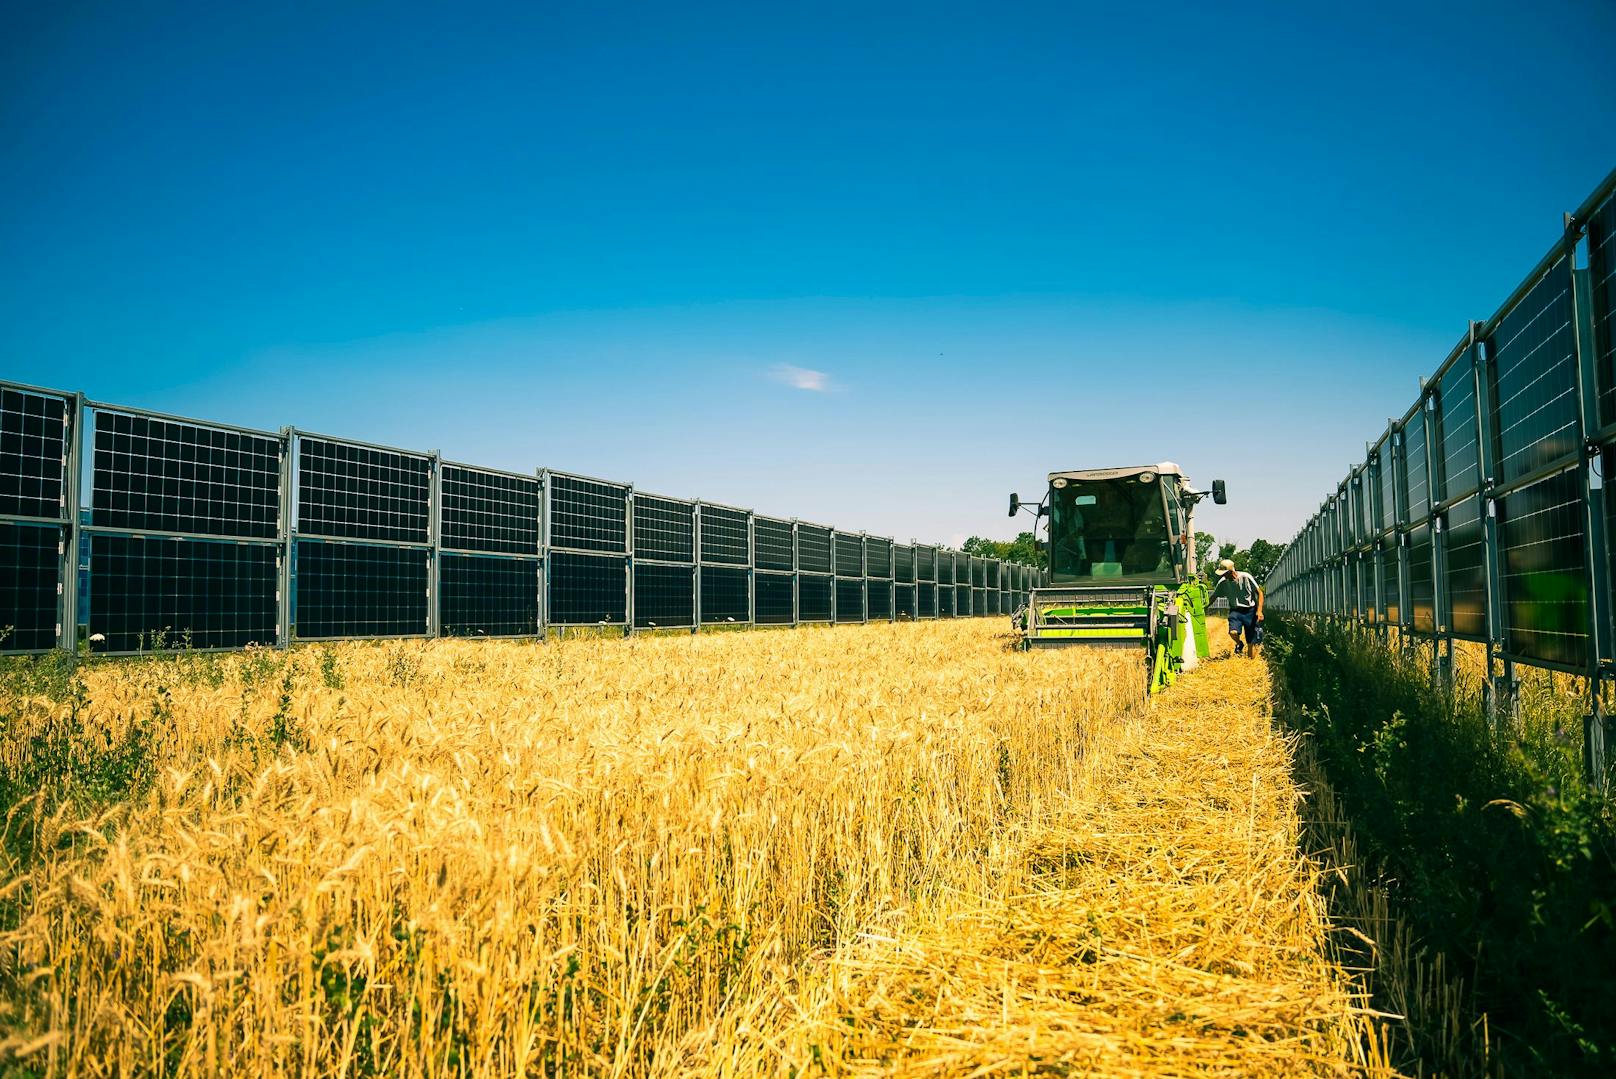 Rund 85 Prozent der Fläche werden für Ackerbau, etwa 4 Prozent für sogenannte Blühstreifen und ein Prozent für das Photovoltaikgerüst verwendet.